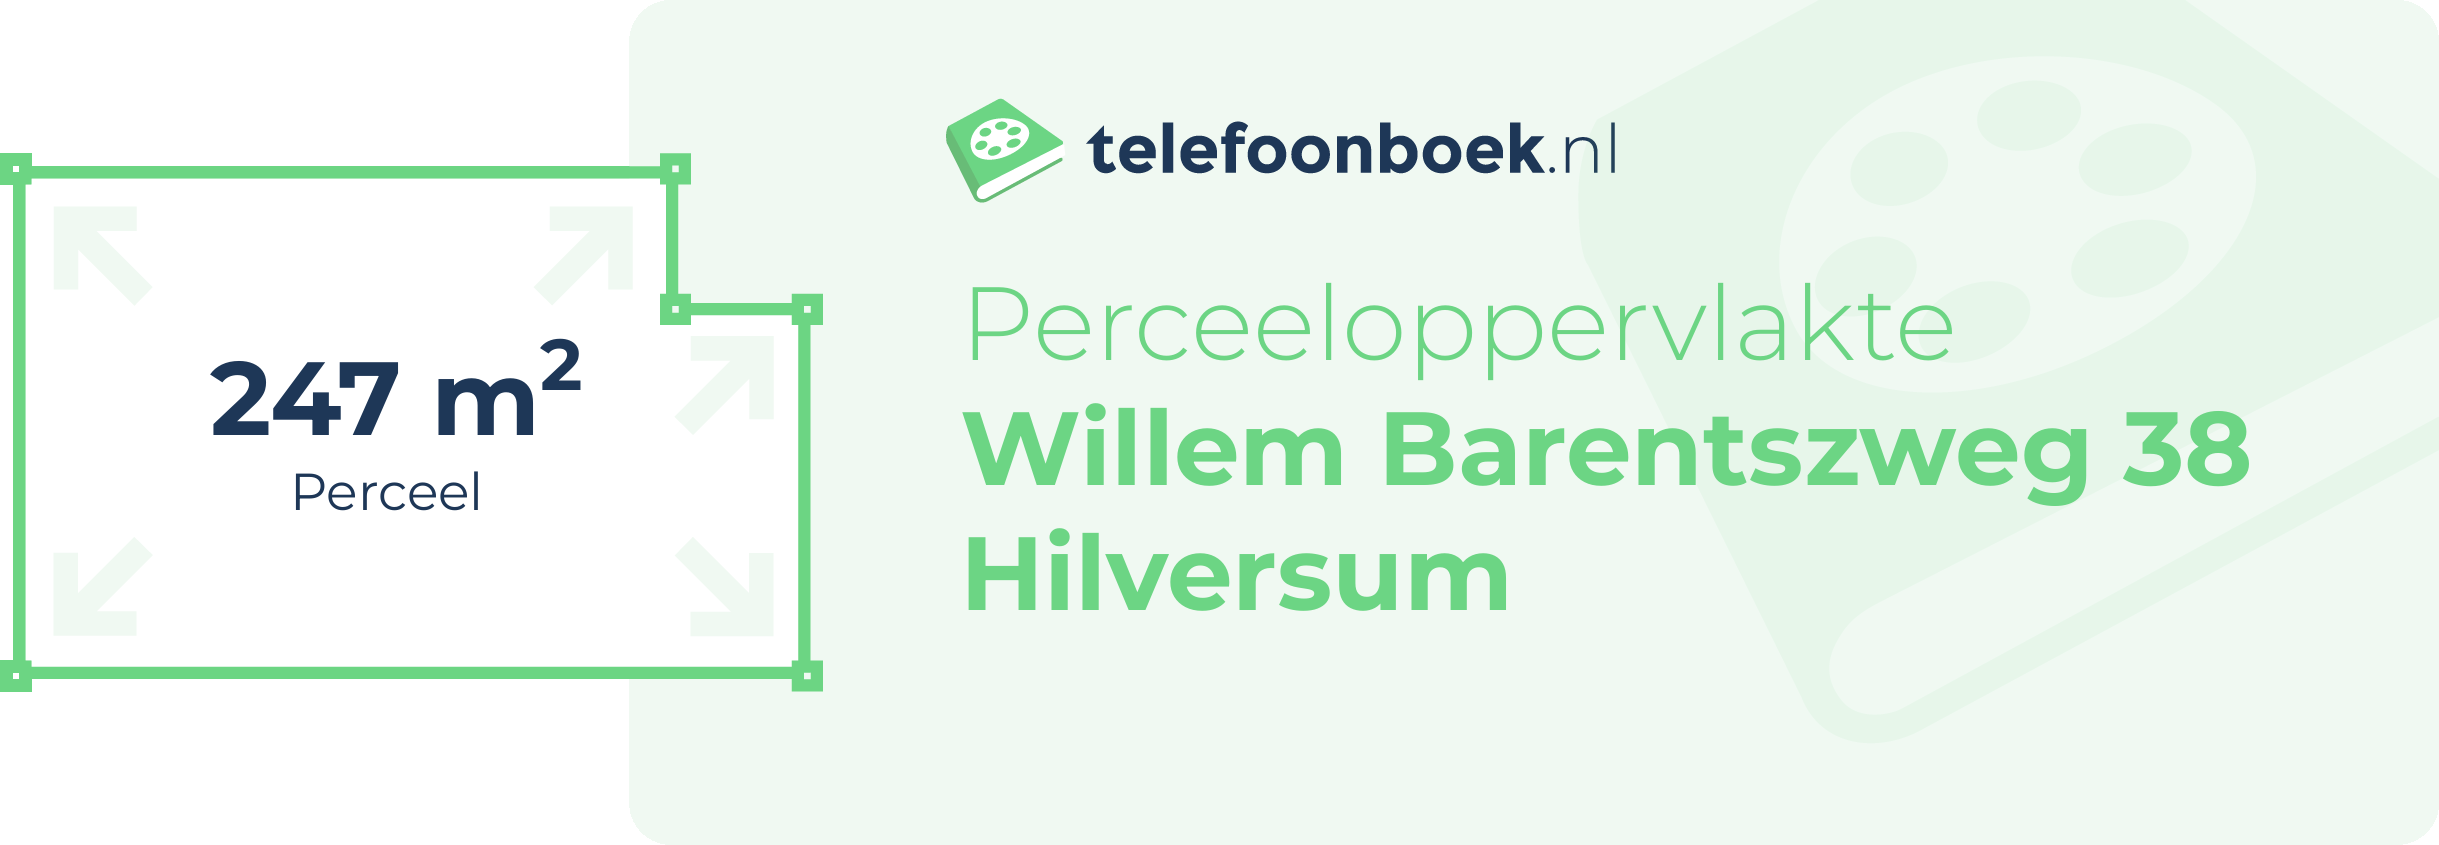 Perceeloppervlakte Willem Barentszweg 38 Hilversum